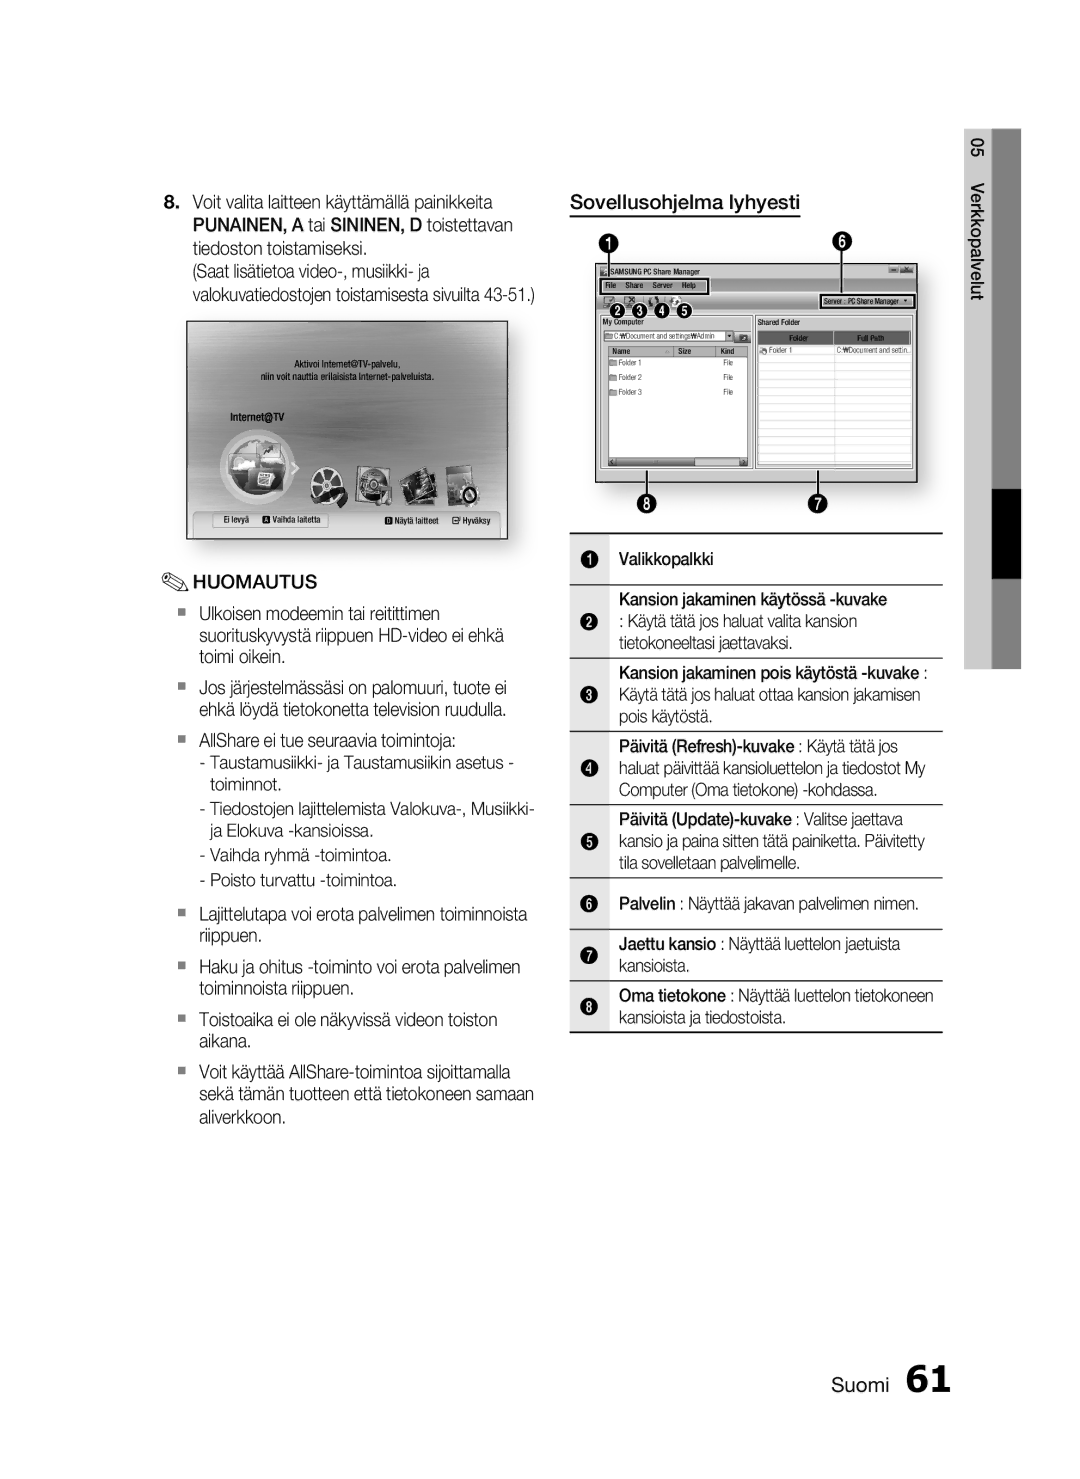 Samsung HT-C6500/XEE manual Sovellusohjelma lyhyesti, Valikkopalkki Kansion jakaminen käytössä -kuvake 